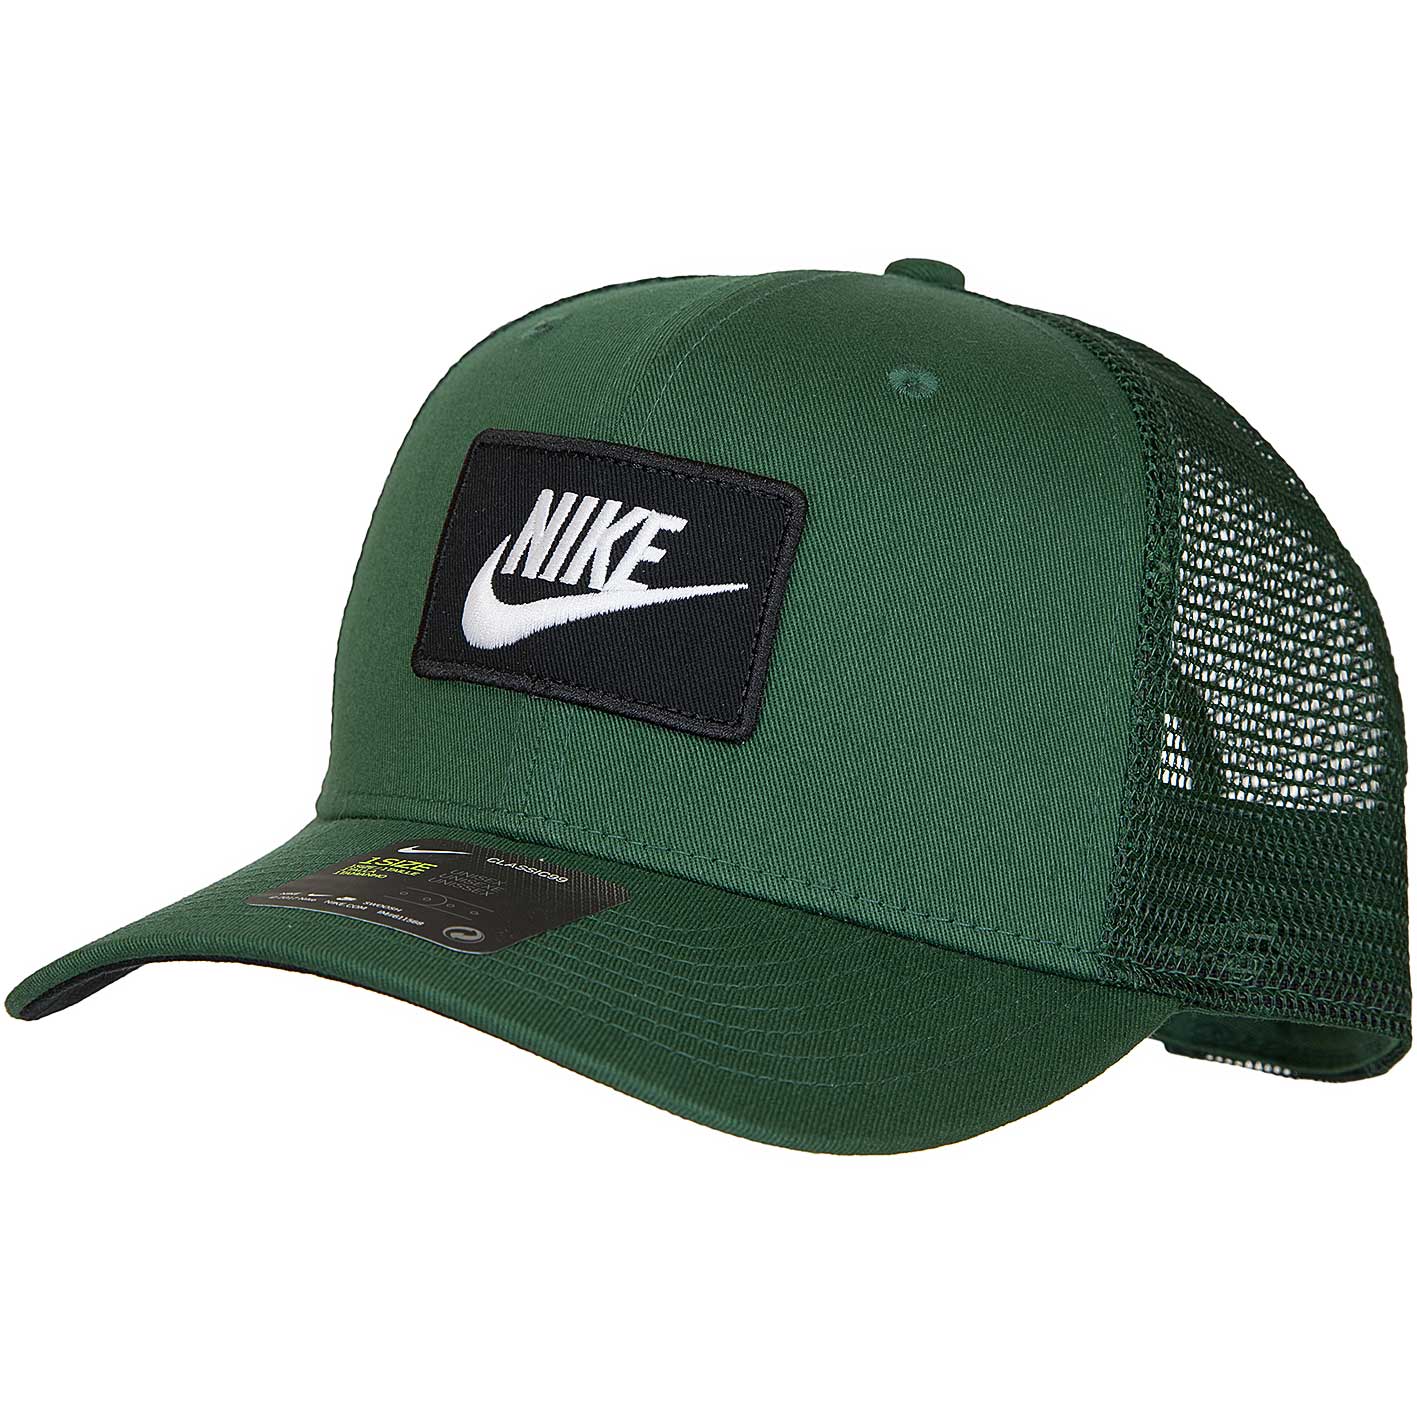 ☆ Nike Trucker Cap Classic99 grün - hier bestellen!